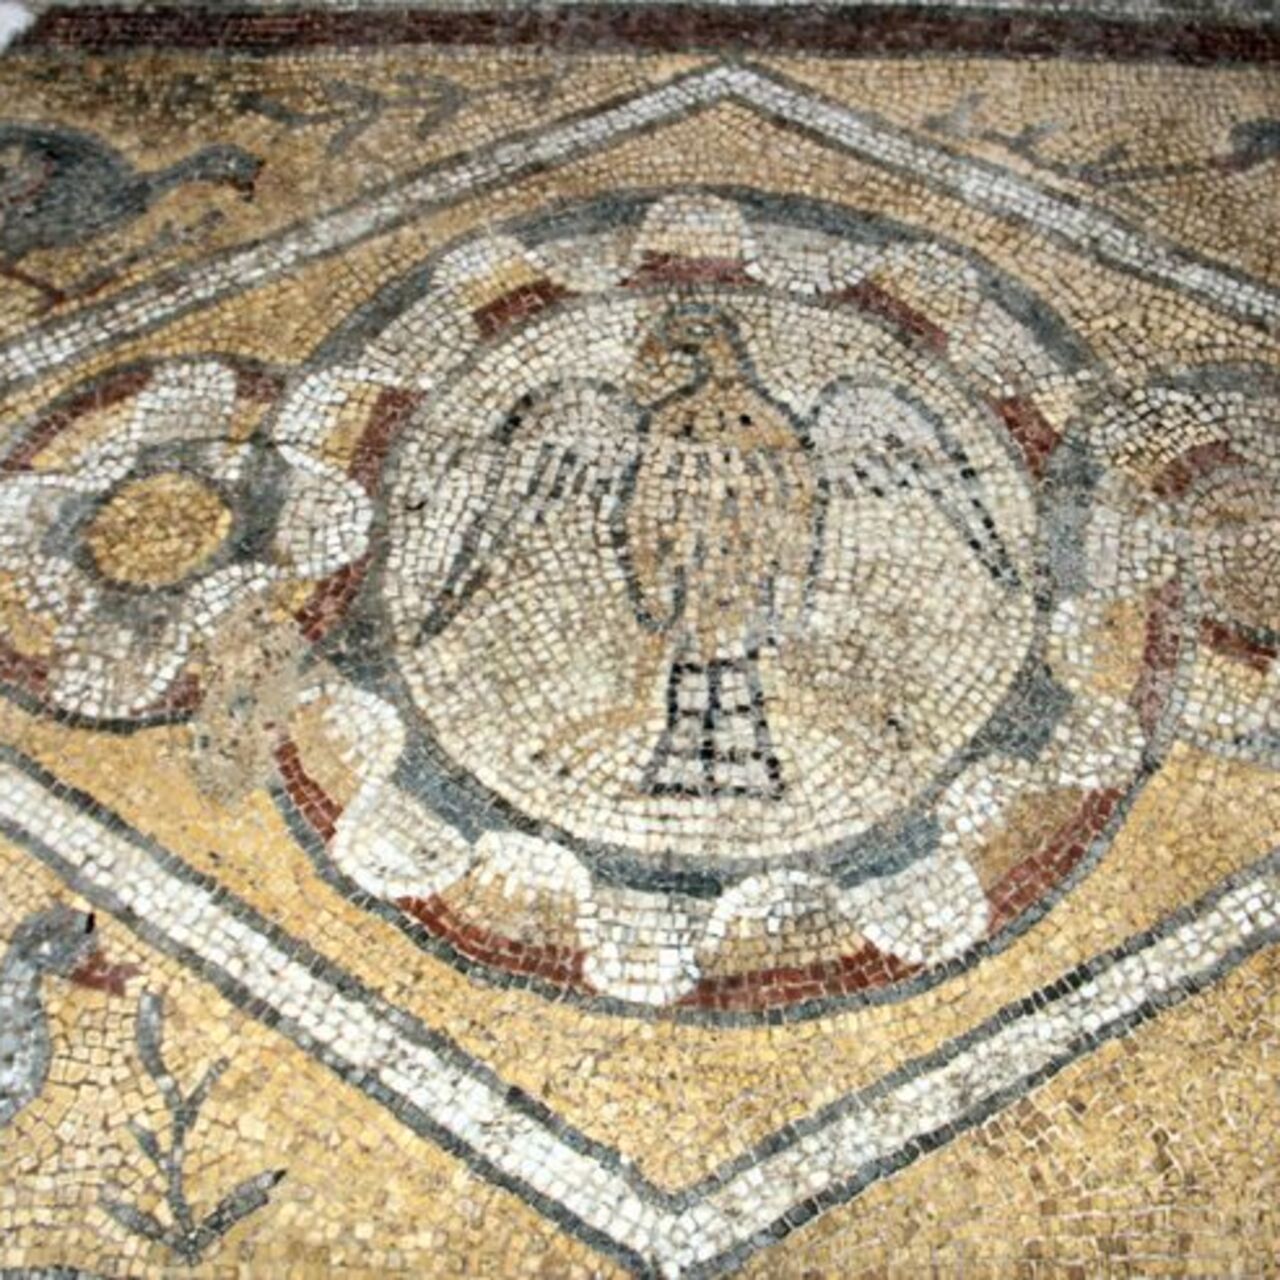 1600 yıllık mozaikler turizme katkı sunacak